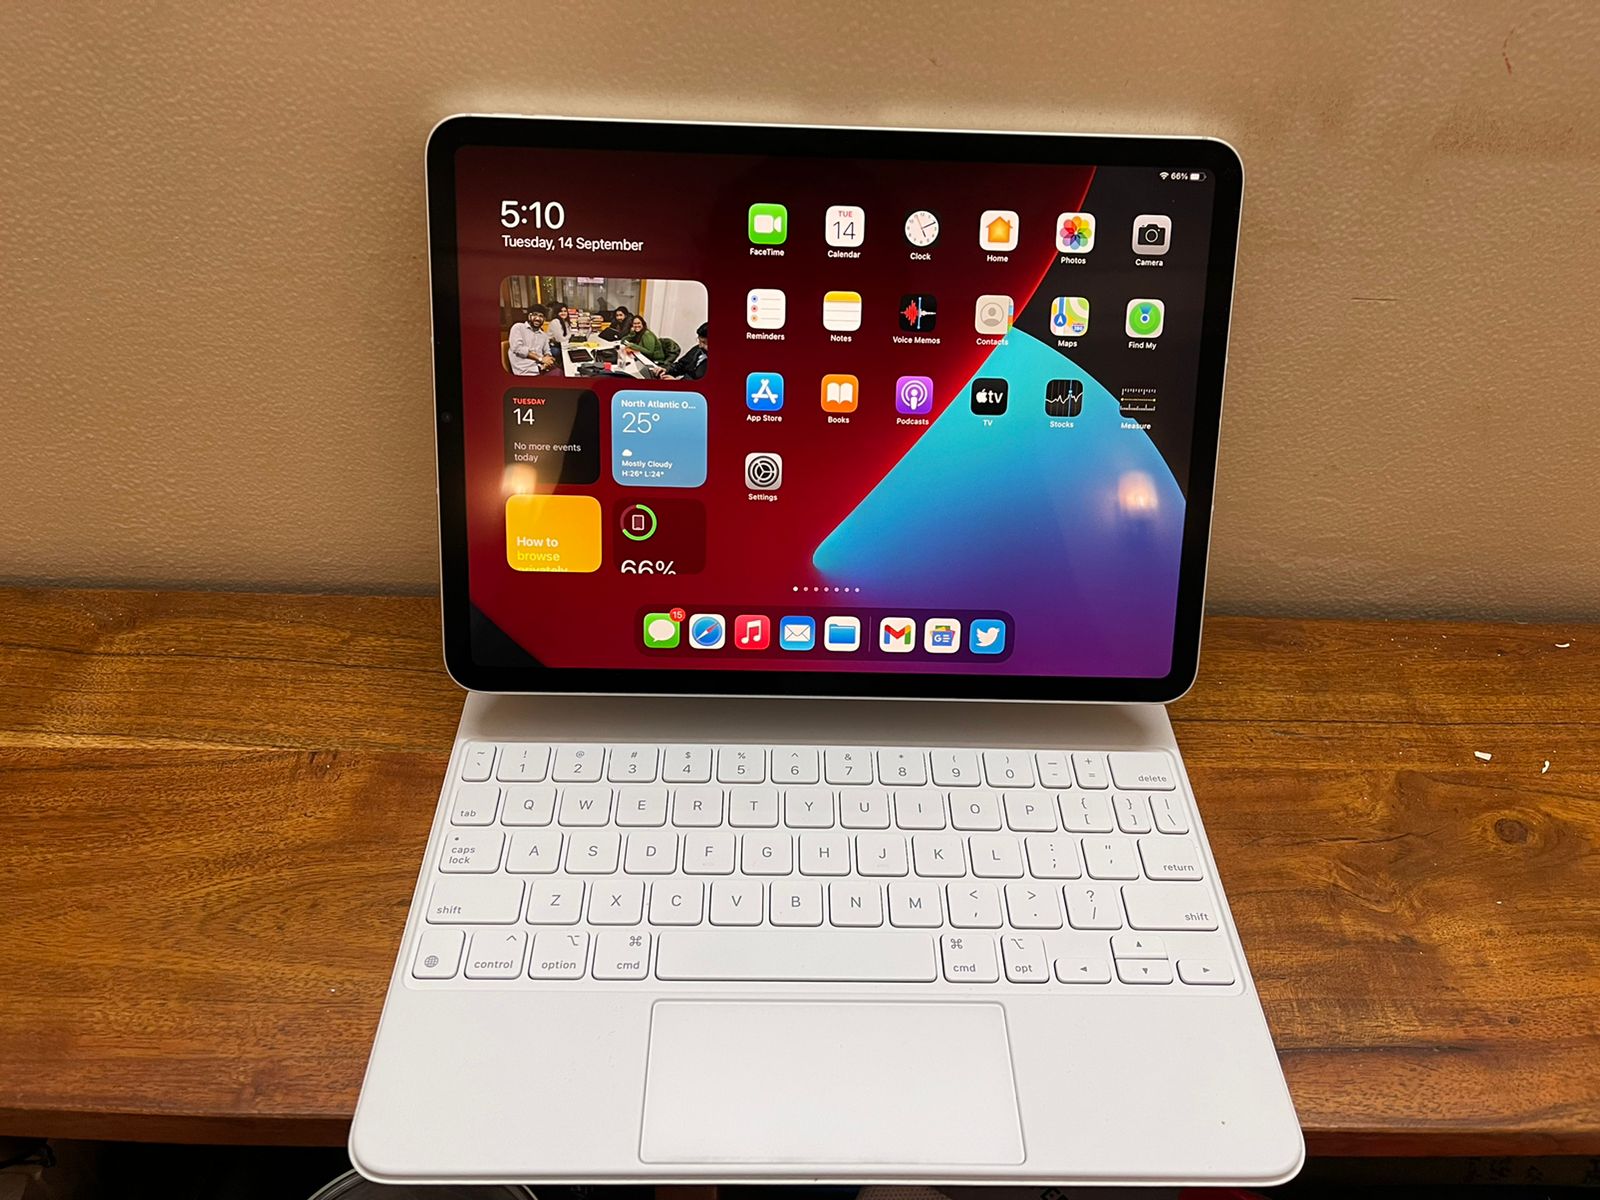 iPad Pro 2021 của Apple rất đáng để được đánh giá, với tính năng mạnh mẽ, màn hình đẹp và thiết kế sang trọng. Nó cung cấp cho người dùng sức mạnh của một thiết bị di động và tiện ích của một máy tính xách tay. Tuy nhiên, nếu bạn muốn thay thế hoàn toàn laptop, hãy cân nhắc trước khi quyết định, điều đó có thể không phù hợp với nhu cầu của bạn.